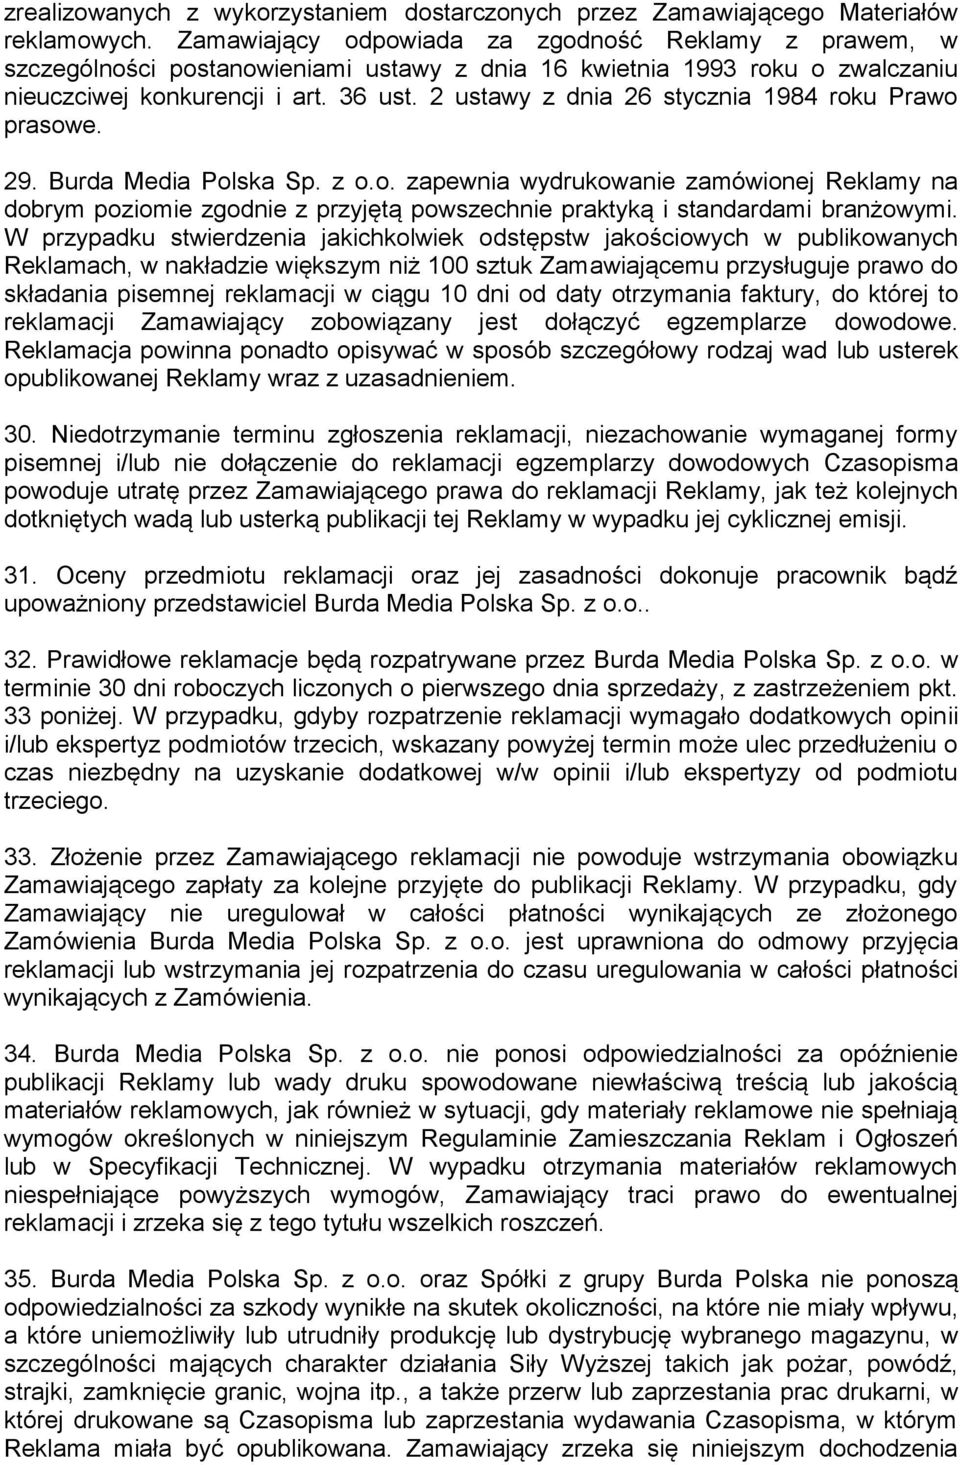 2 ustawy z dnia 26 stycznia 1984 roku Prawo prasowe. 29. Burda Media Polska Sp. z o.o. zapewnia wydrukowanie zamówionej Reklamy na dobrym poziomie zgodnie z przyjętą powszechnie praktyką i standardami branżowymi.